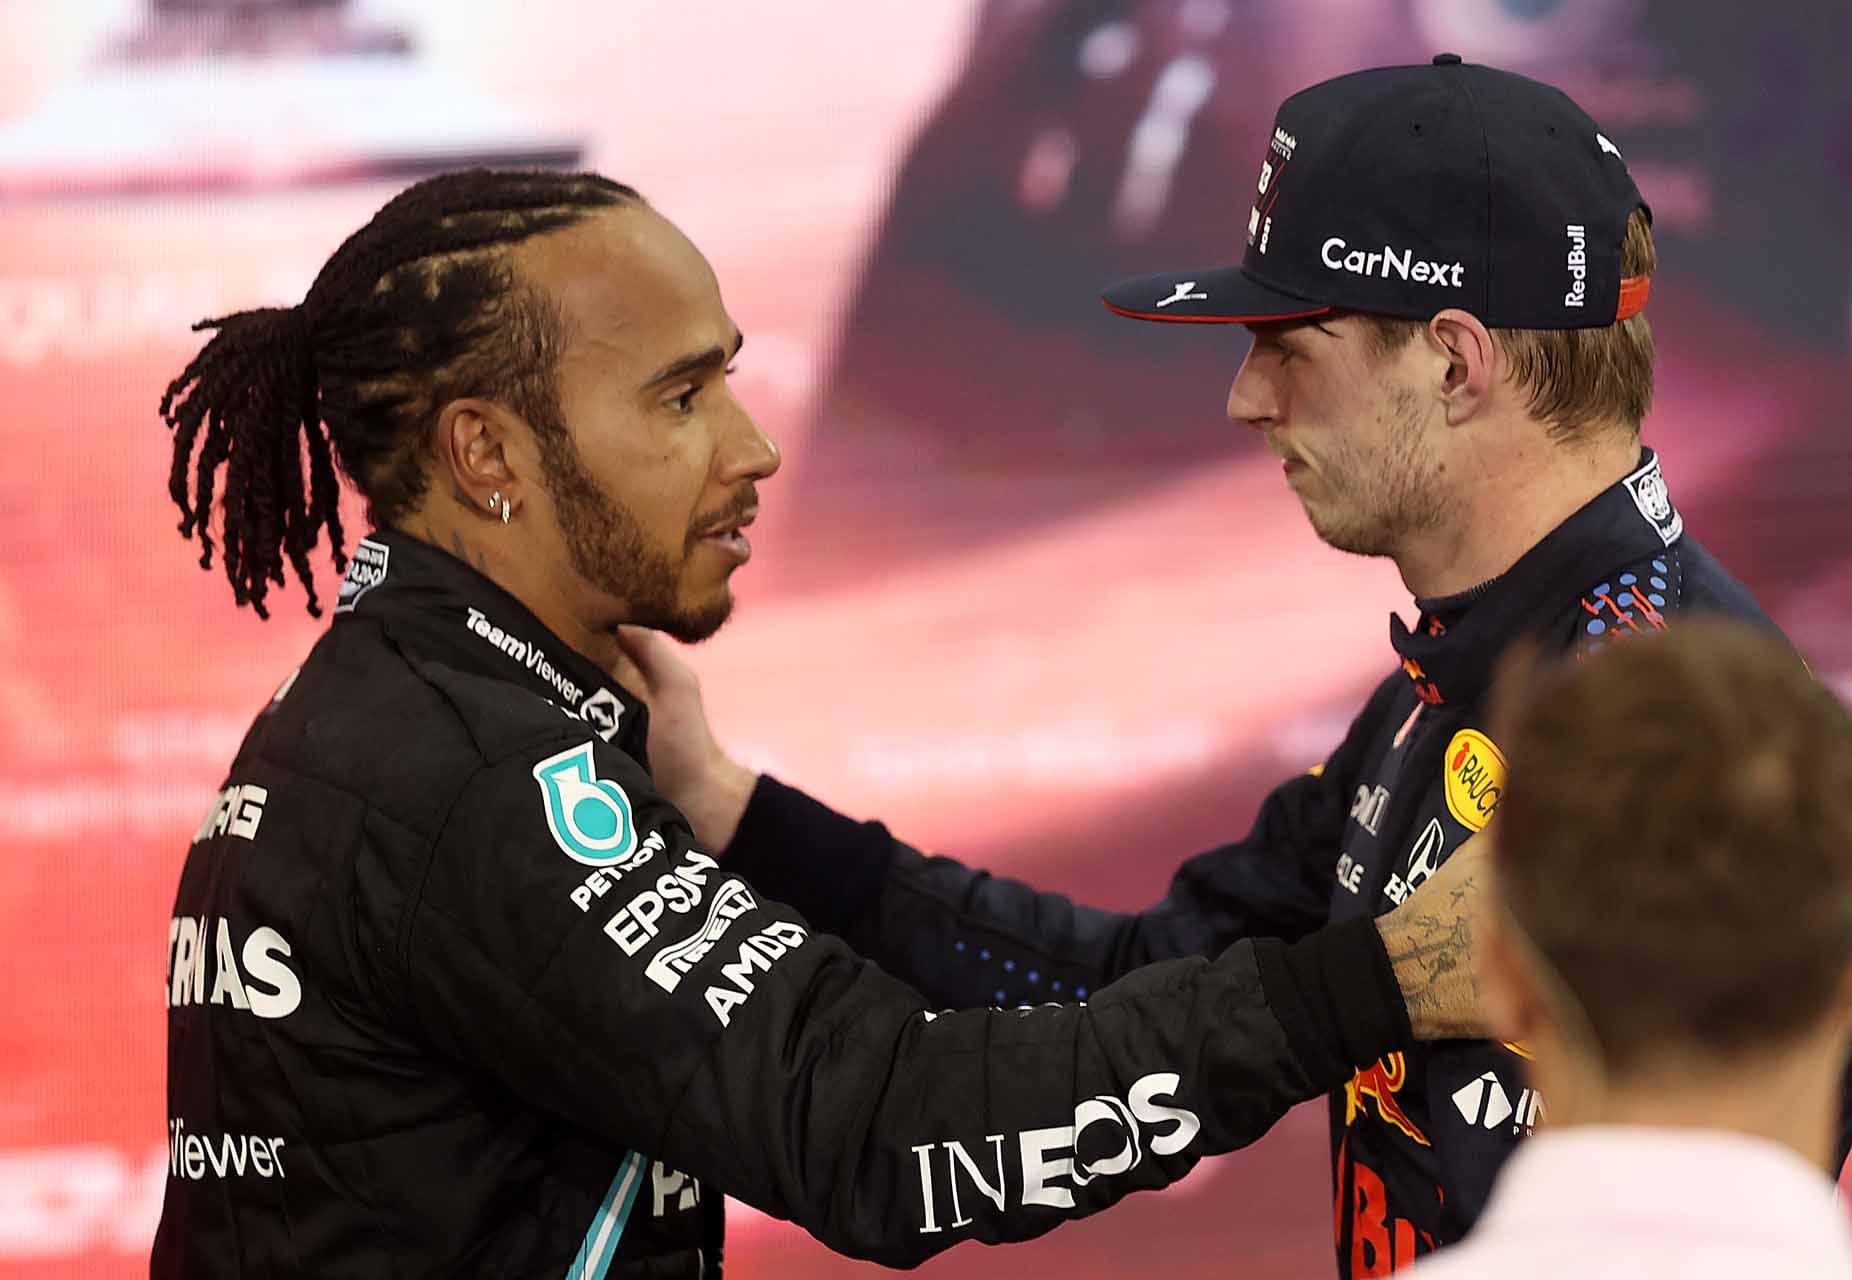 Lewis Hamilton megbékélt a 2021-es abu dhabi eseményekkel: A Forma-1 világa